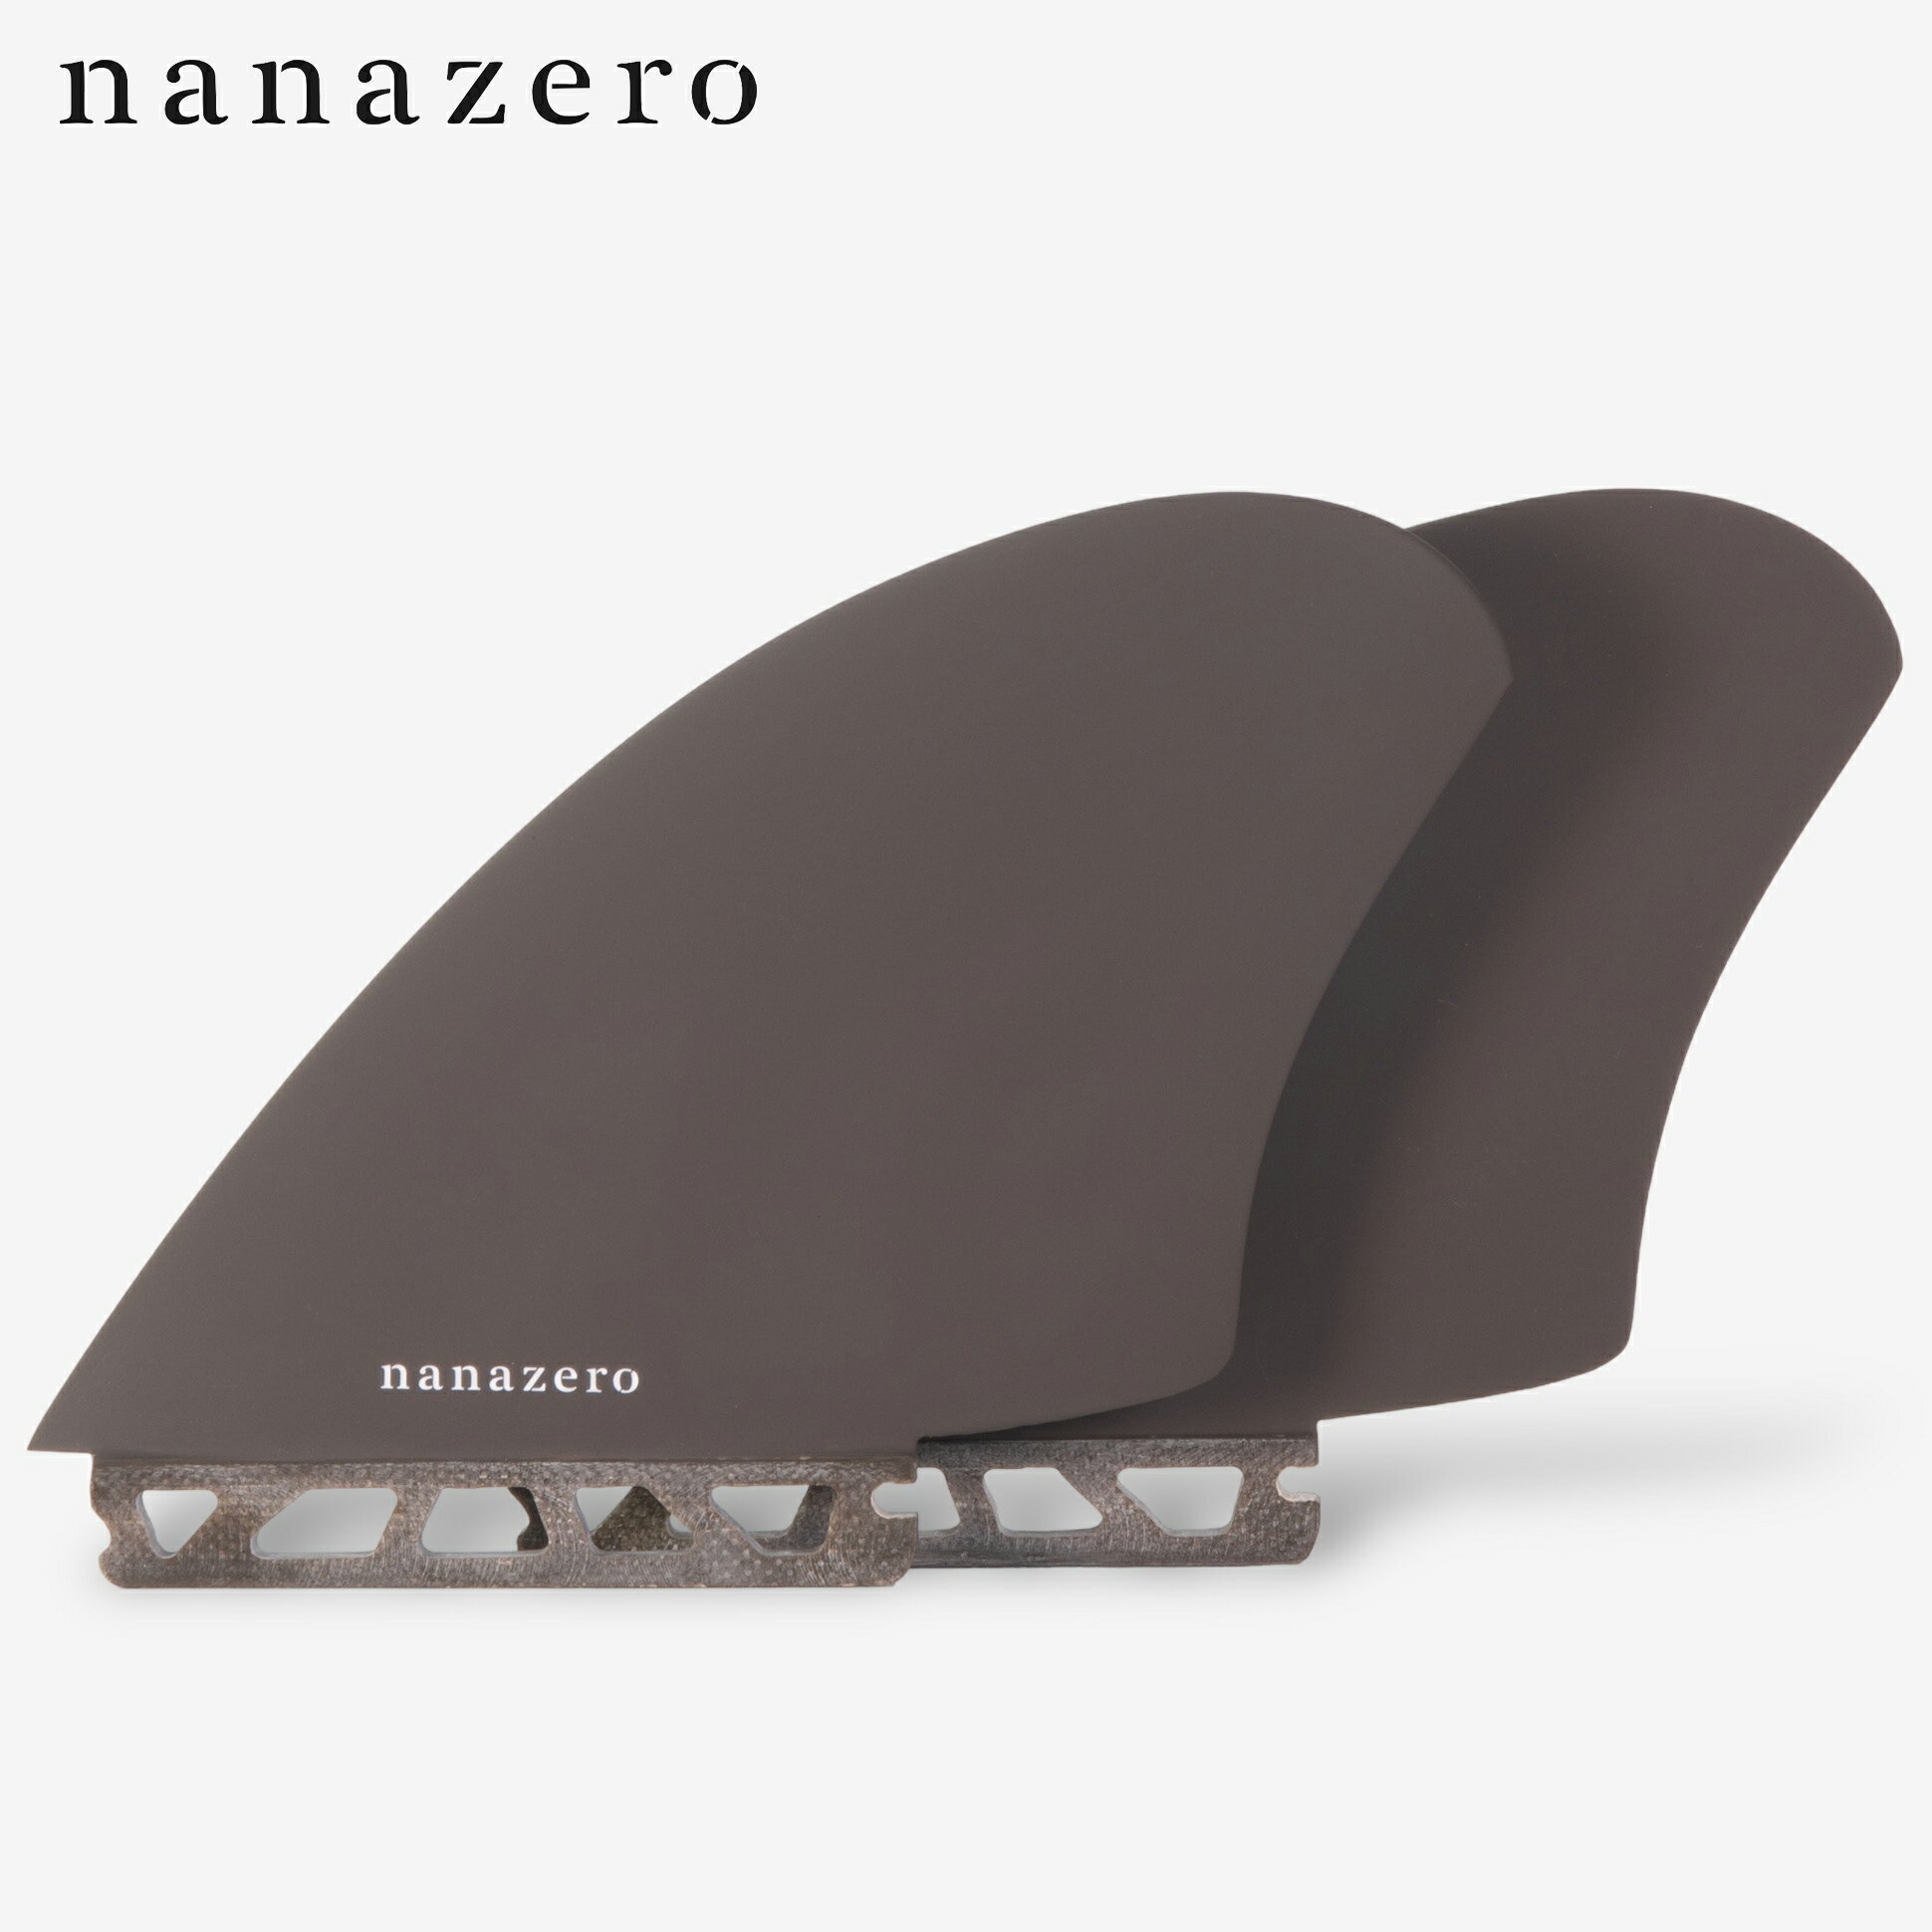 nanazero Honeycomb(ハニカム) キールフィン II シングルタブ (サーフィン サーフボード用)